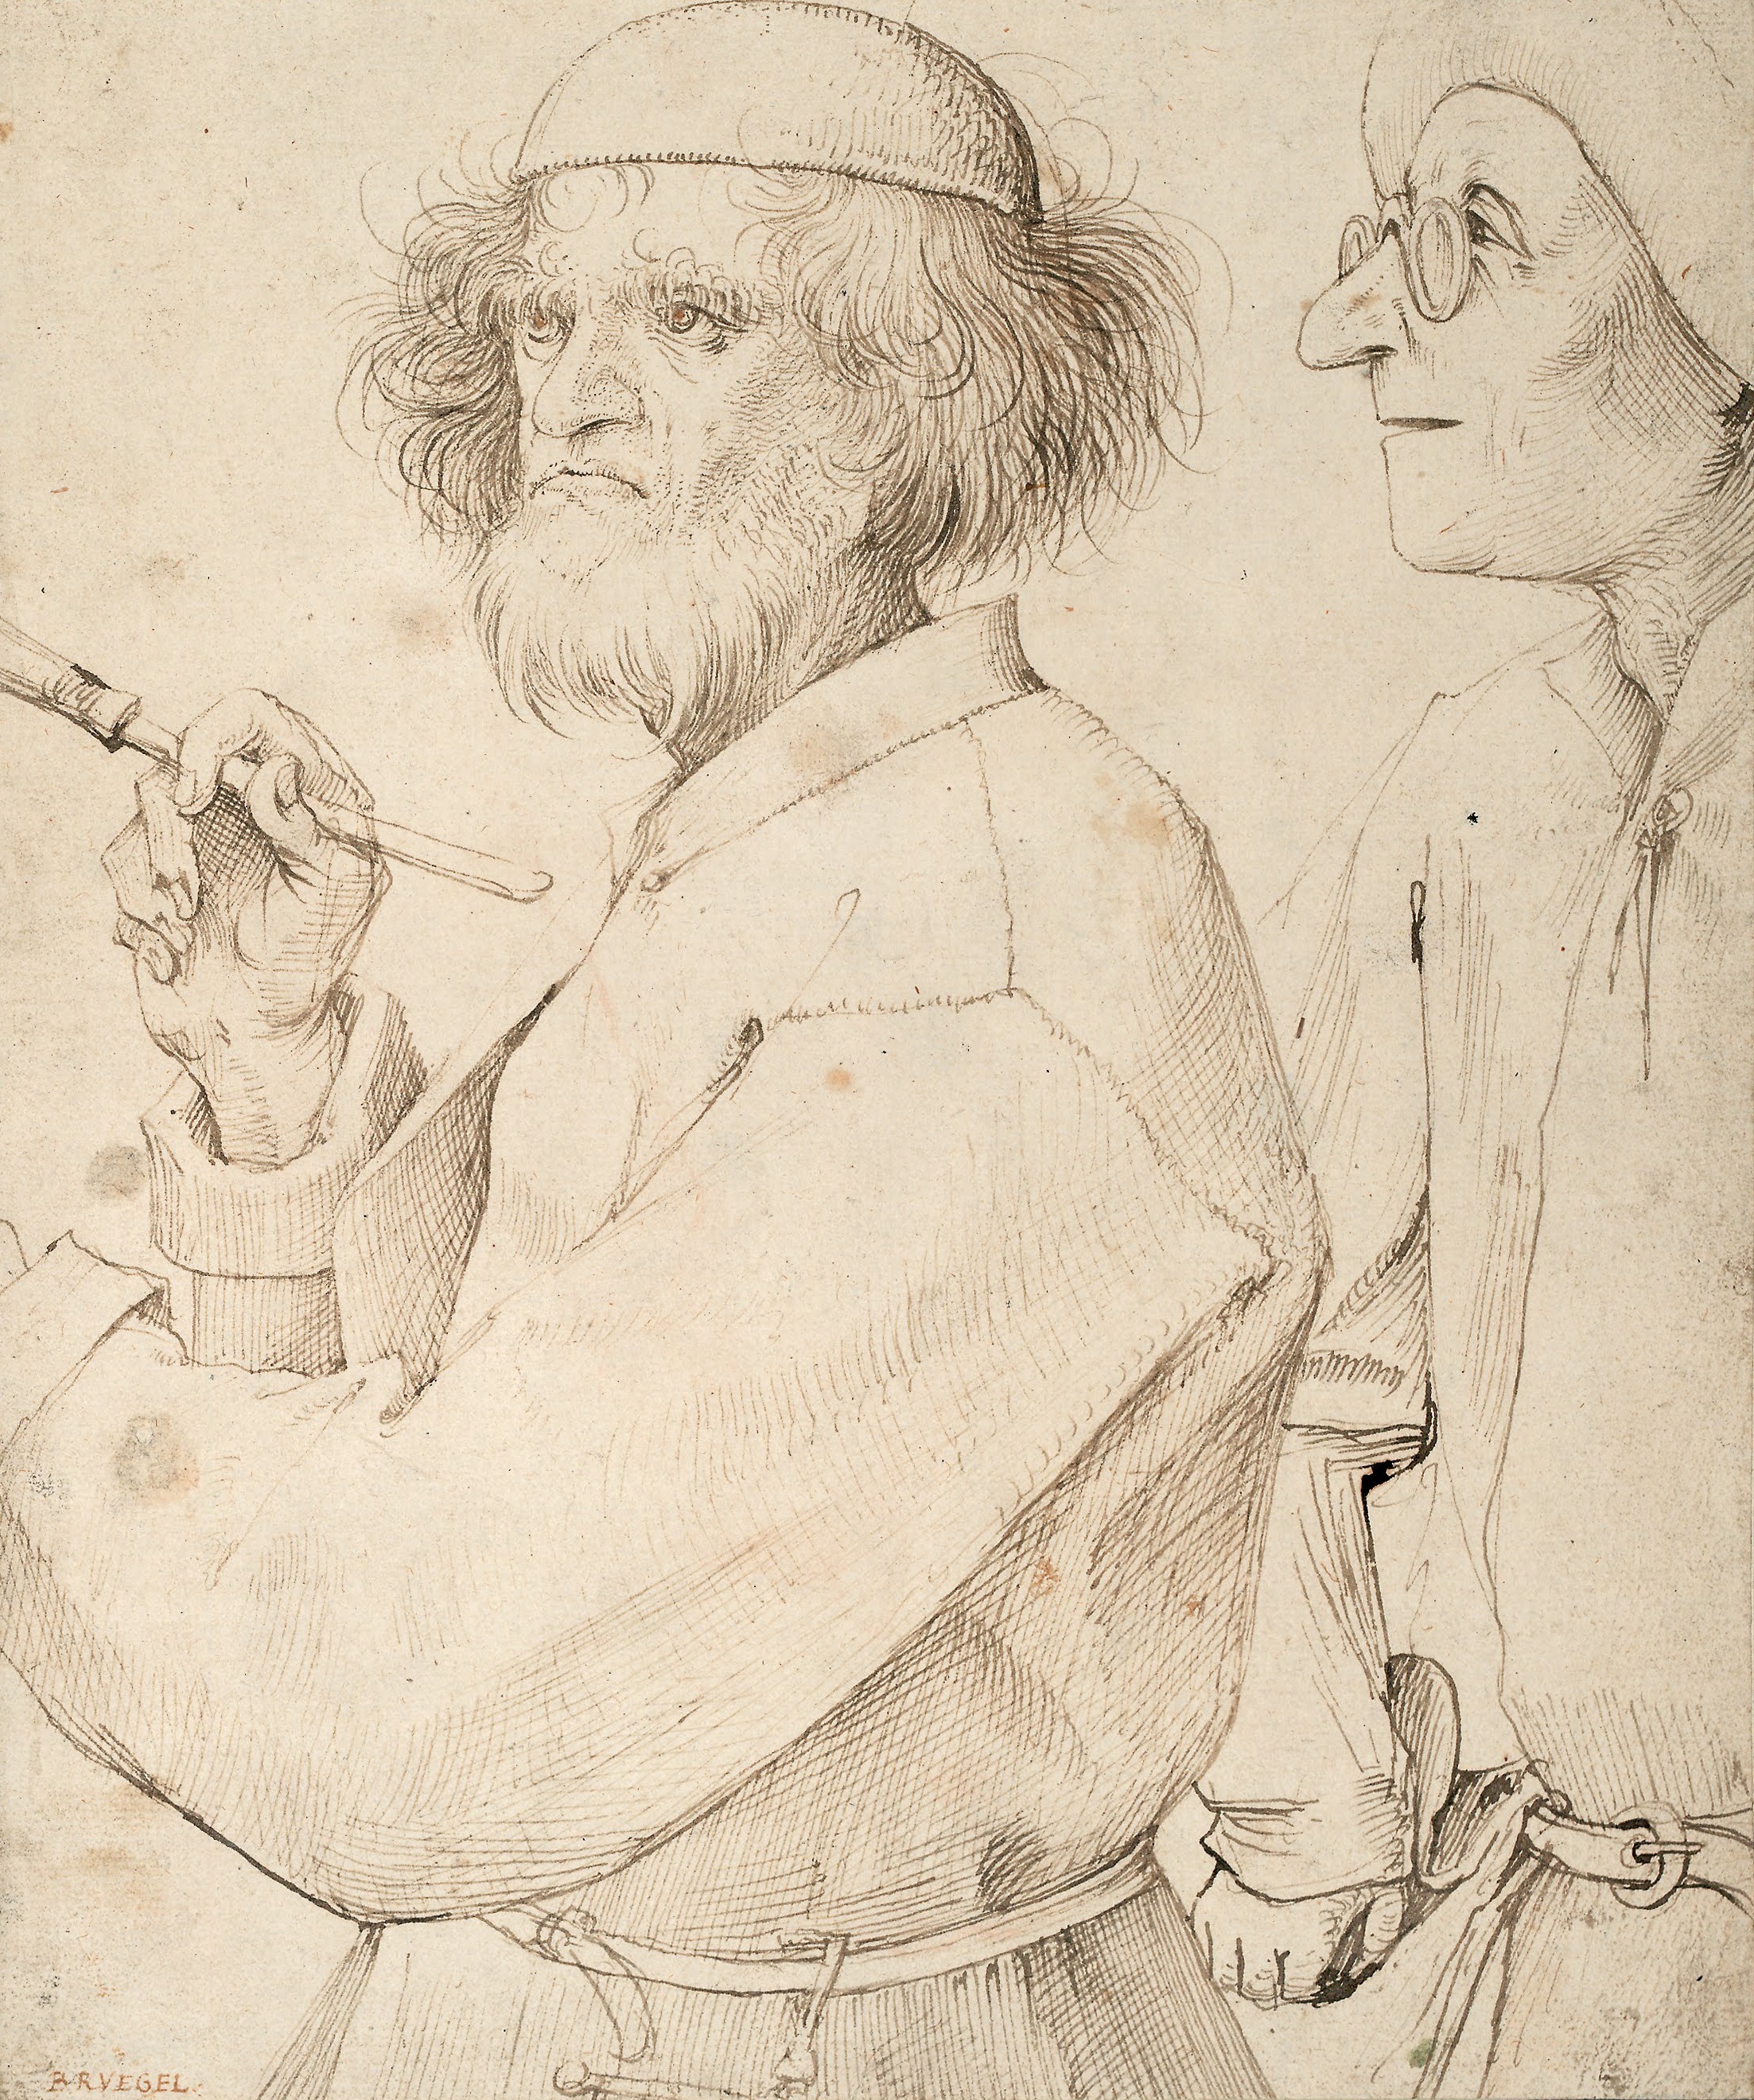 The Art of Pieter Breugel the Elder